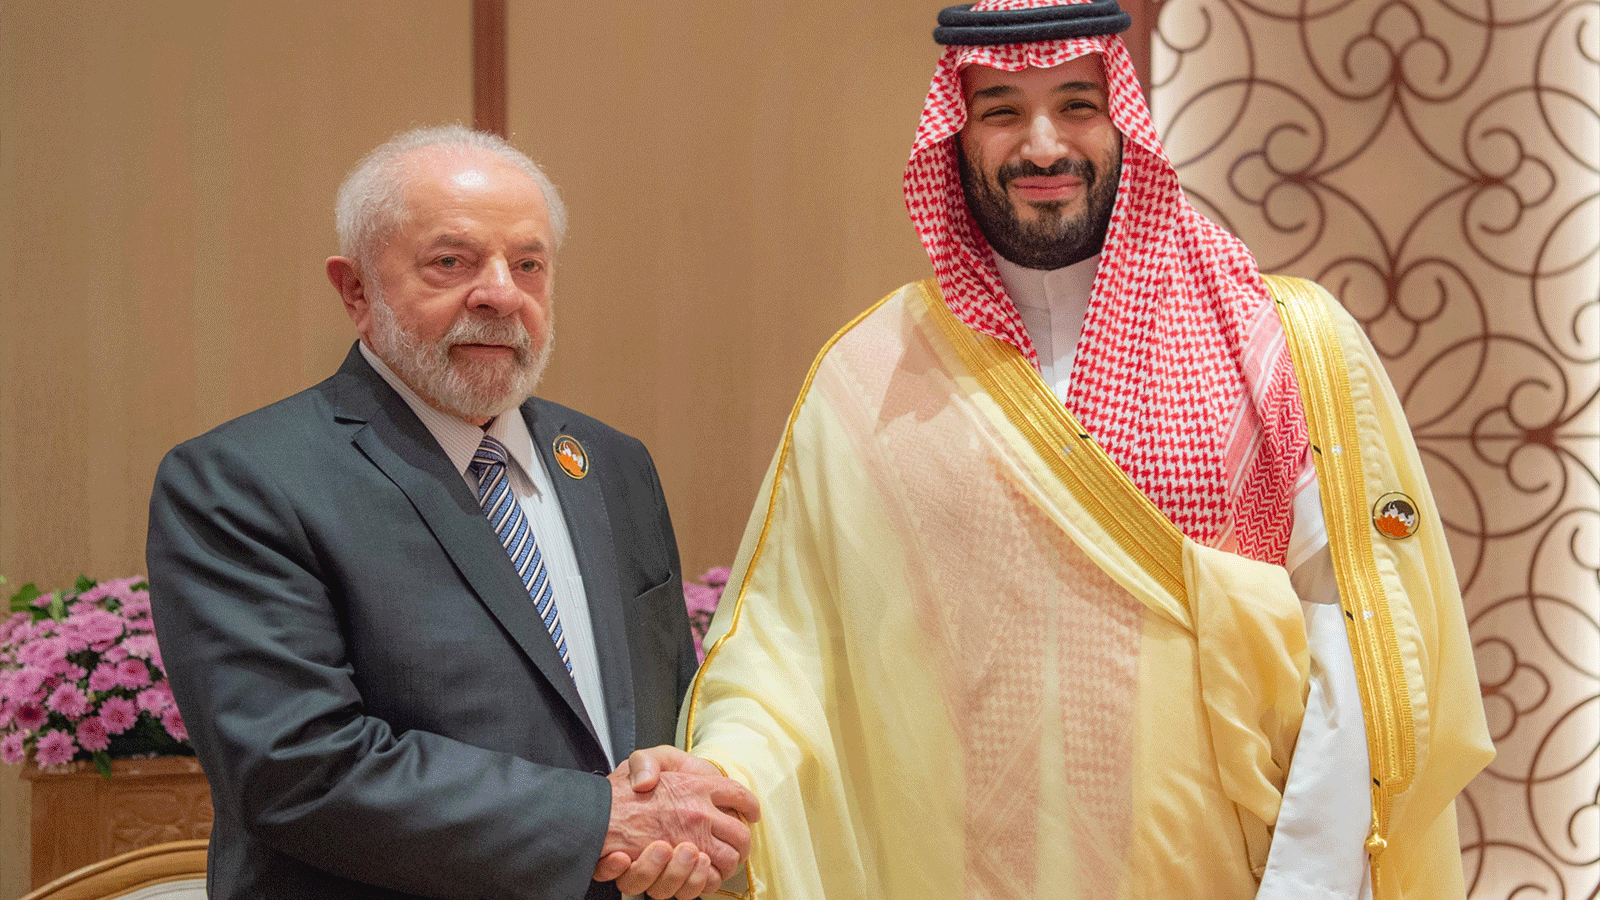 ولي العهد السعودي الأمير محمد بن سلمان يصافح الرئيس البرازيلي لولا دا سيلفا في قمة العشرين المنعقدة في نيودلهي